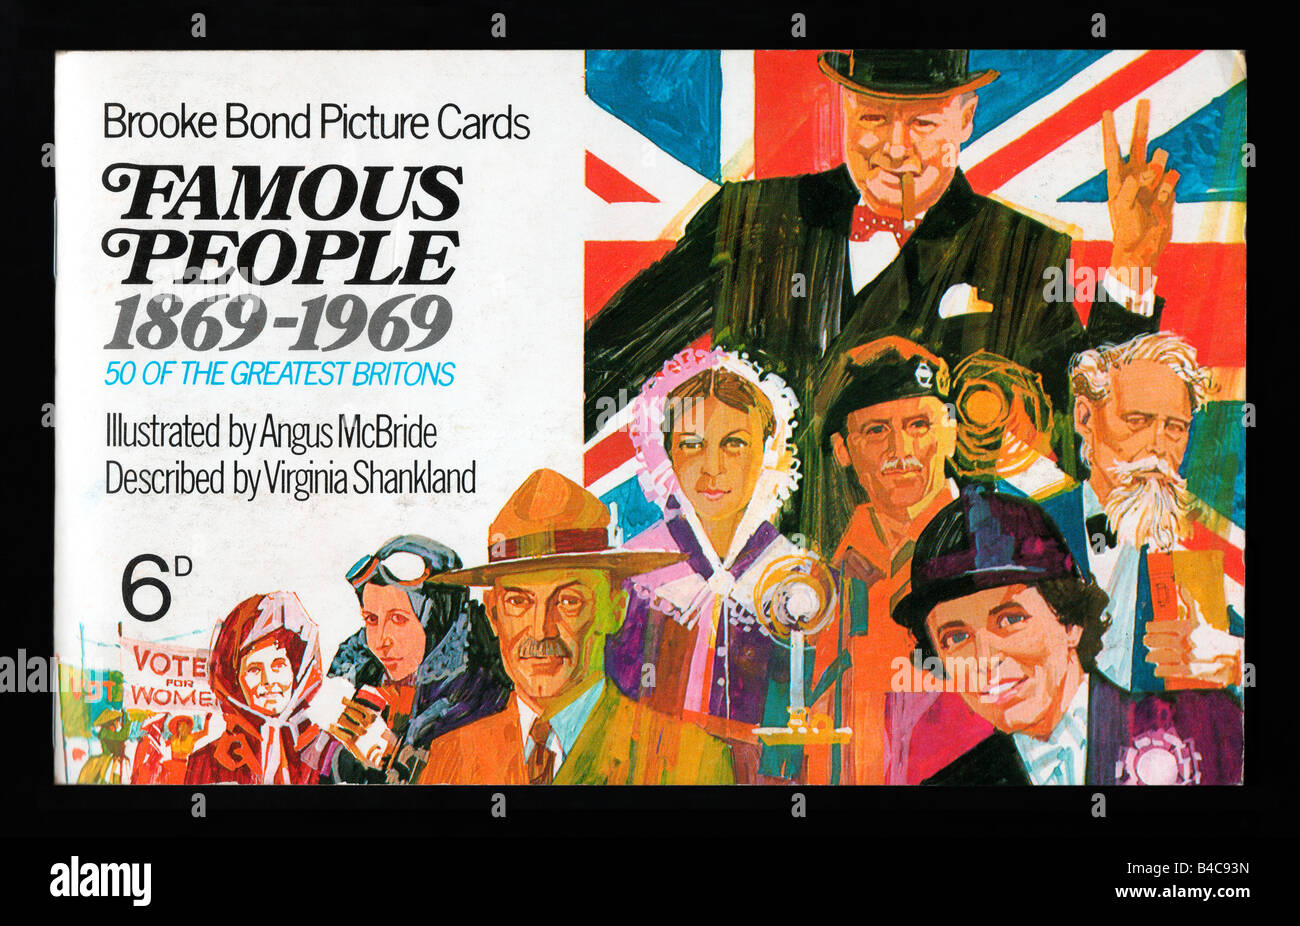 Brooke Bond PG Tips picture card álbum personas famosas publicado el 30 de junio de 1969. Foto de stock